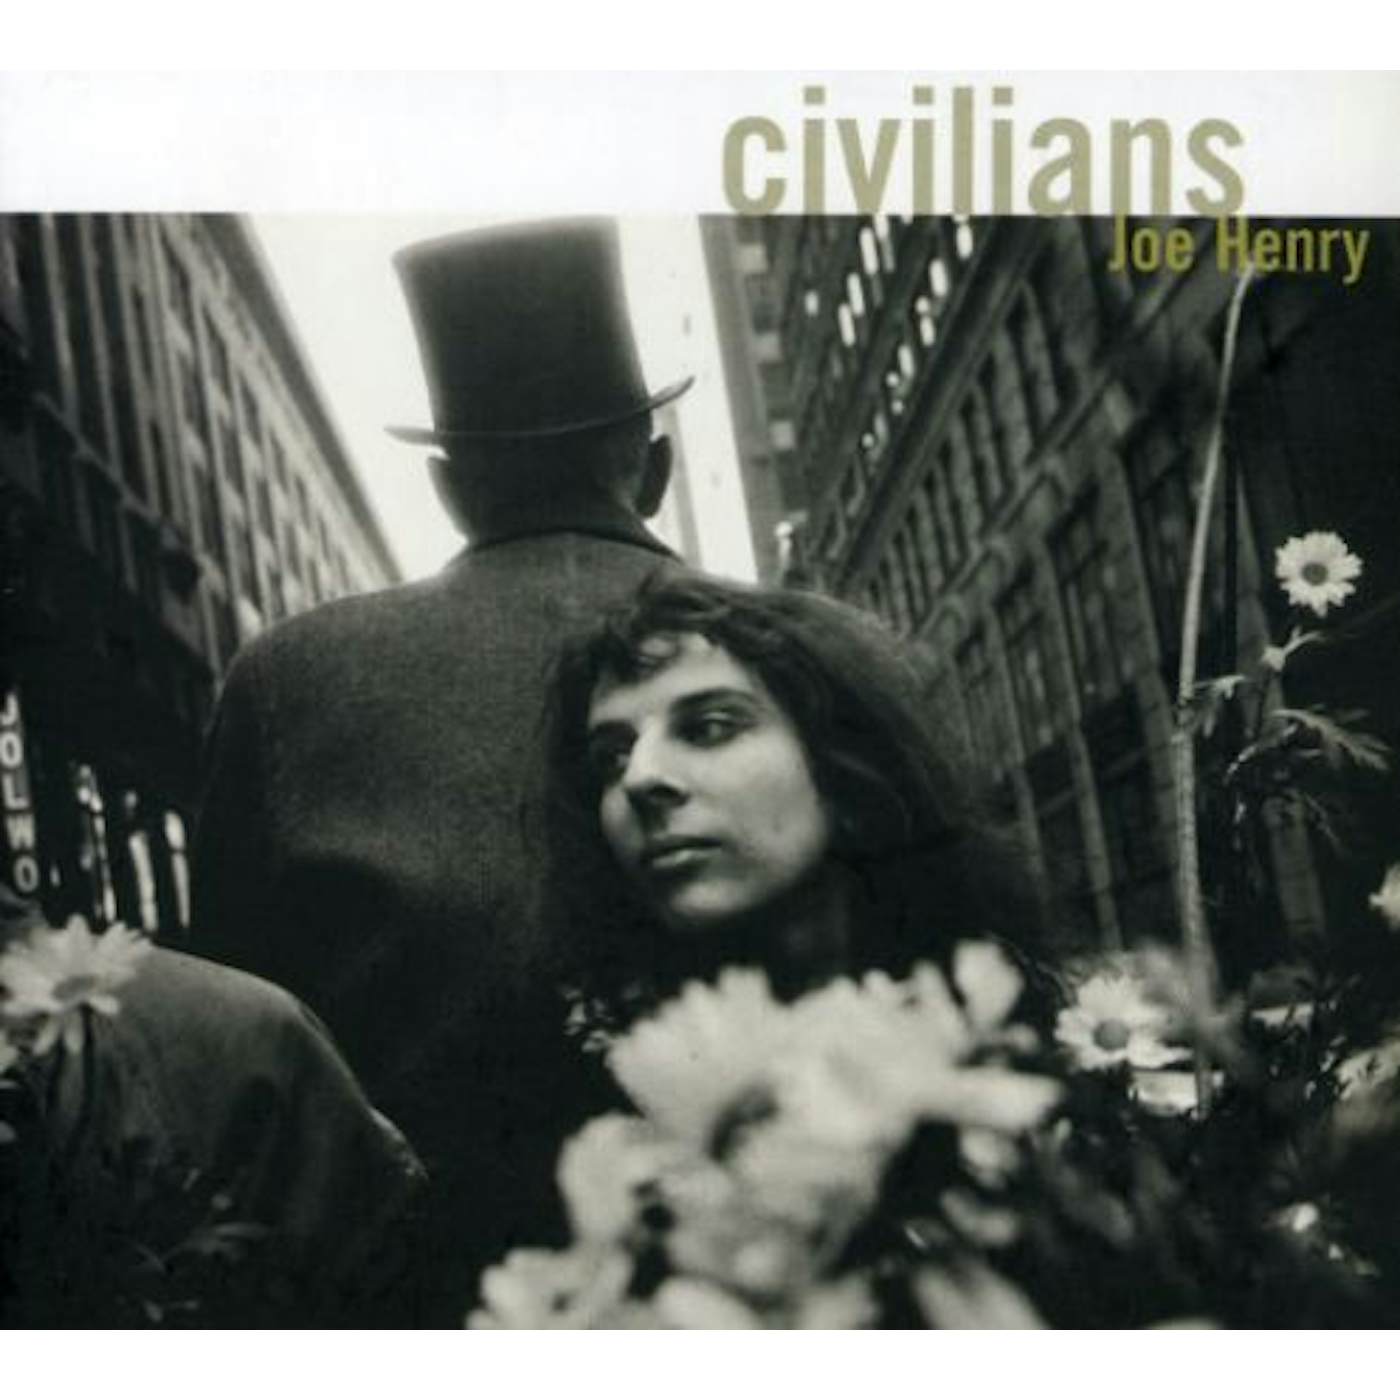 Joe Henry CIVILIANS CD